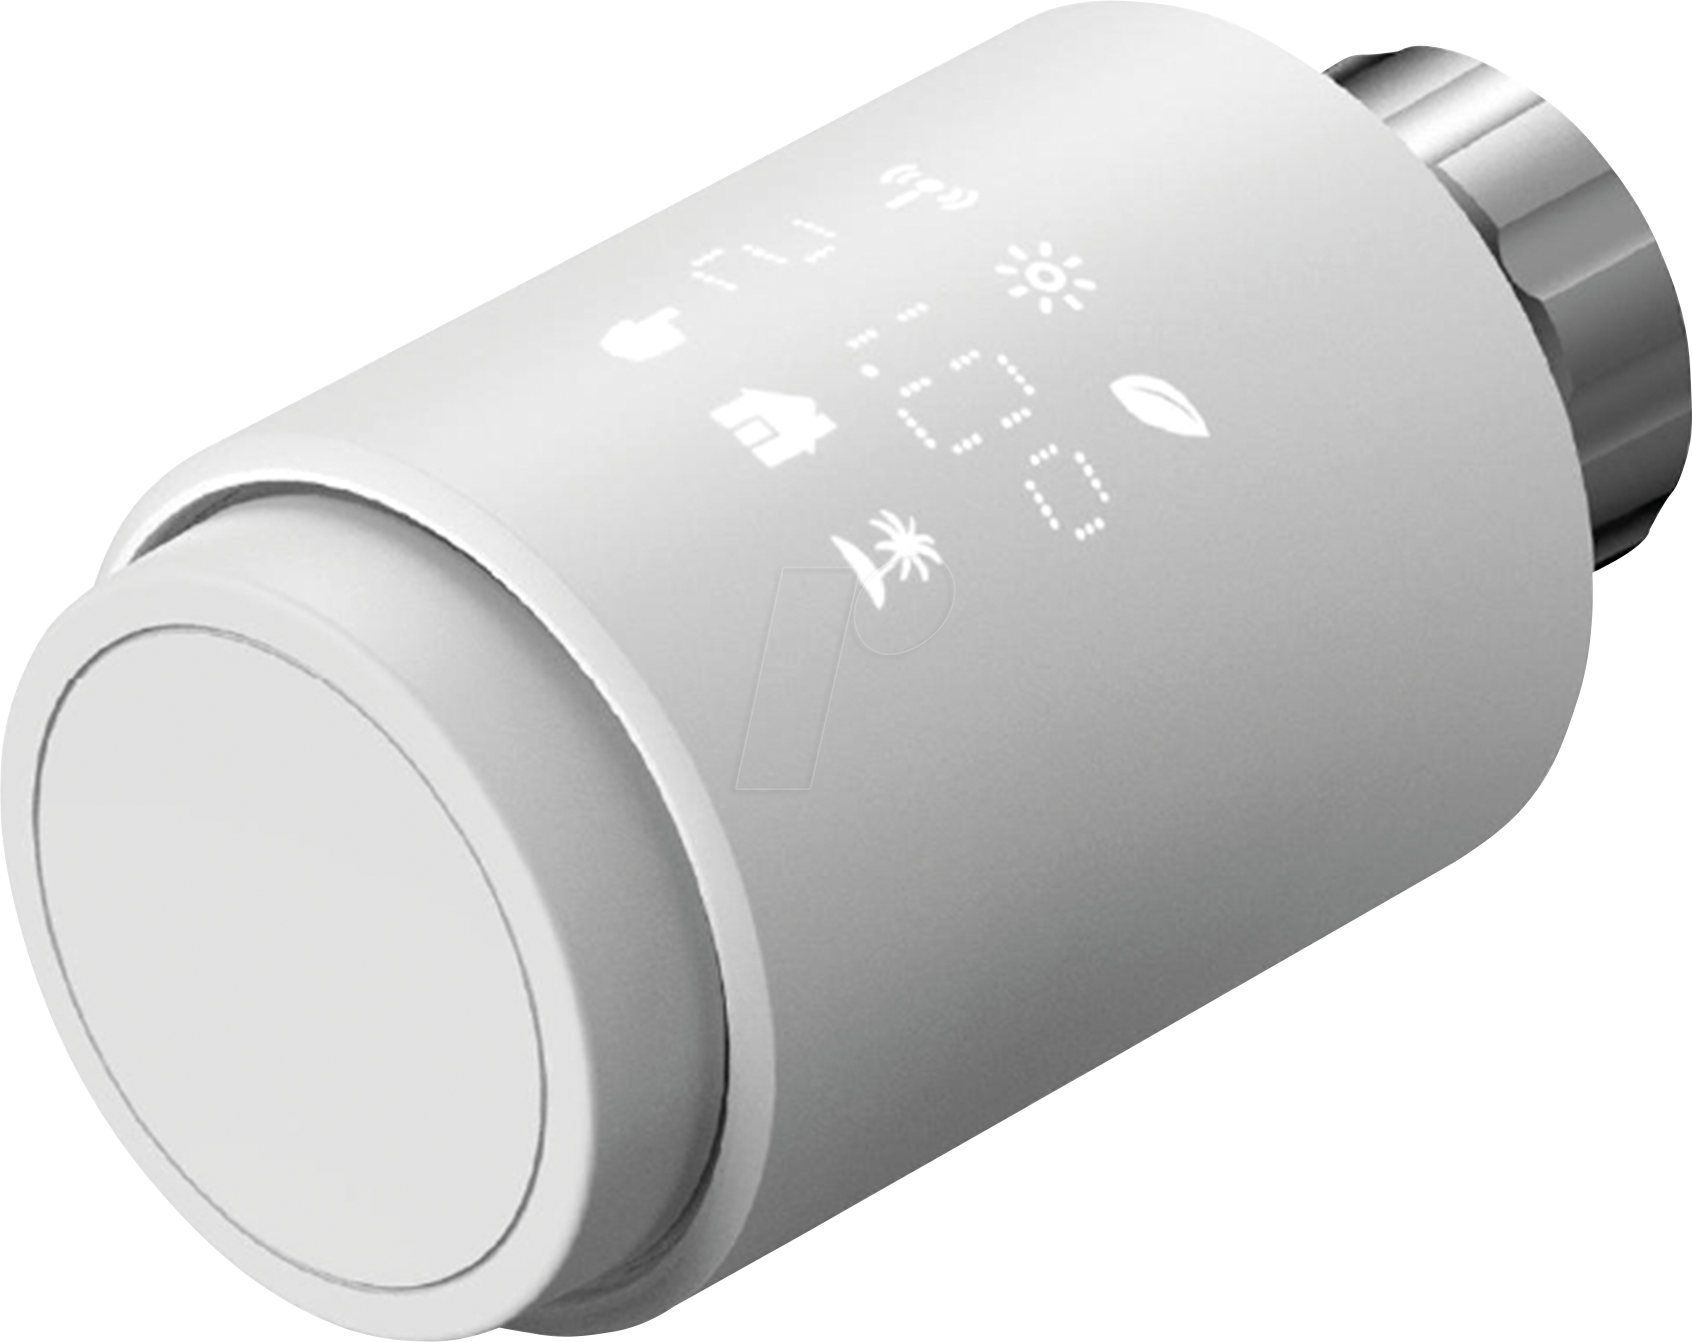 ESSE 120336 - Heizkörperthermostat, Bluetooth von Essentials